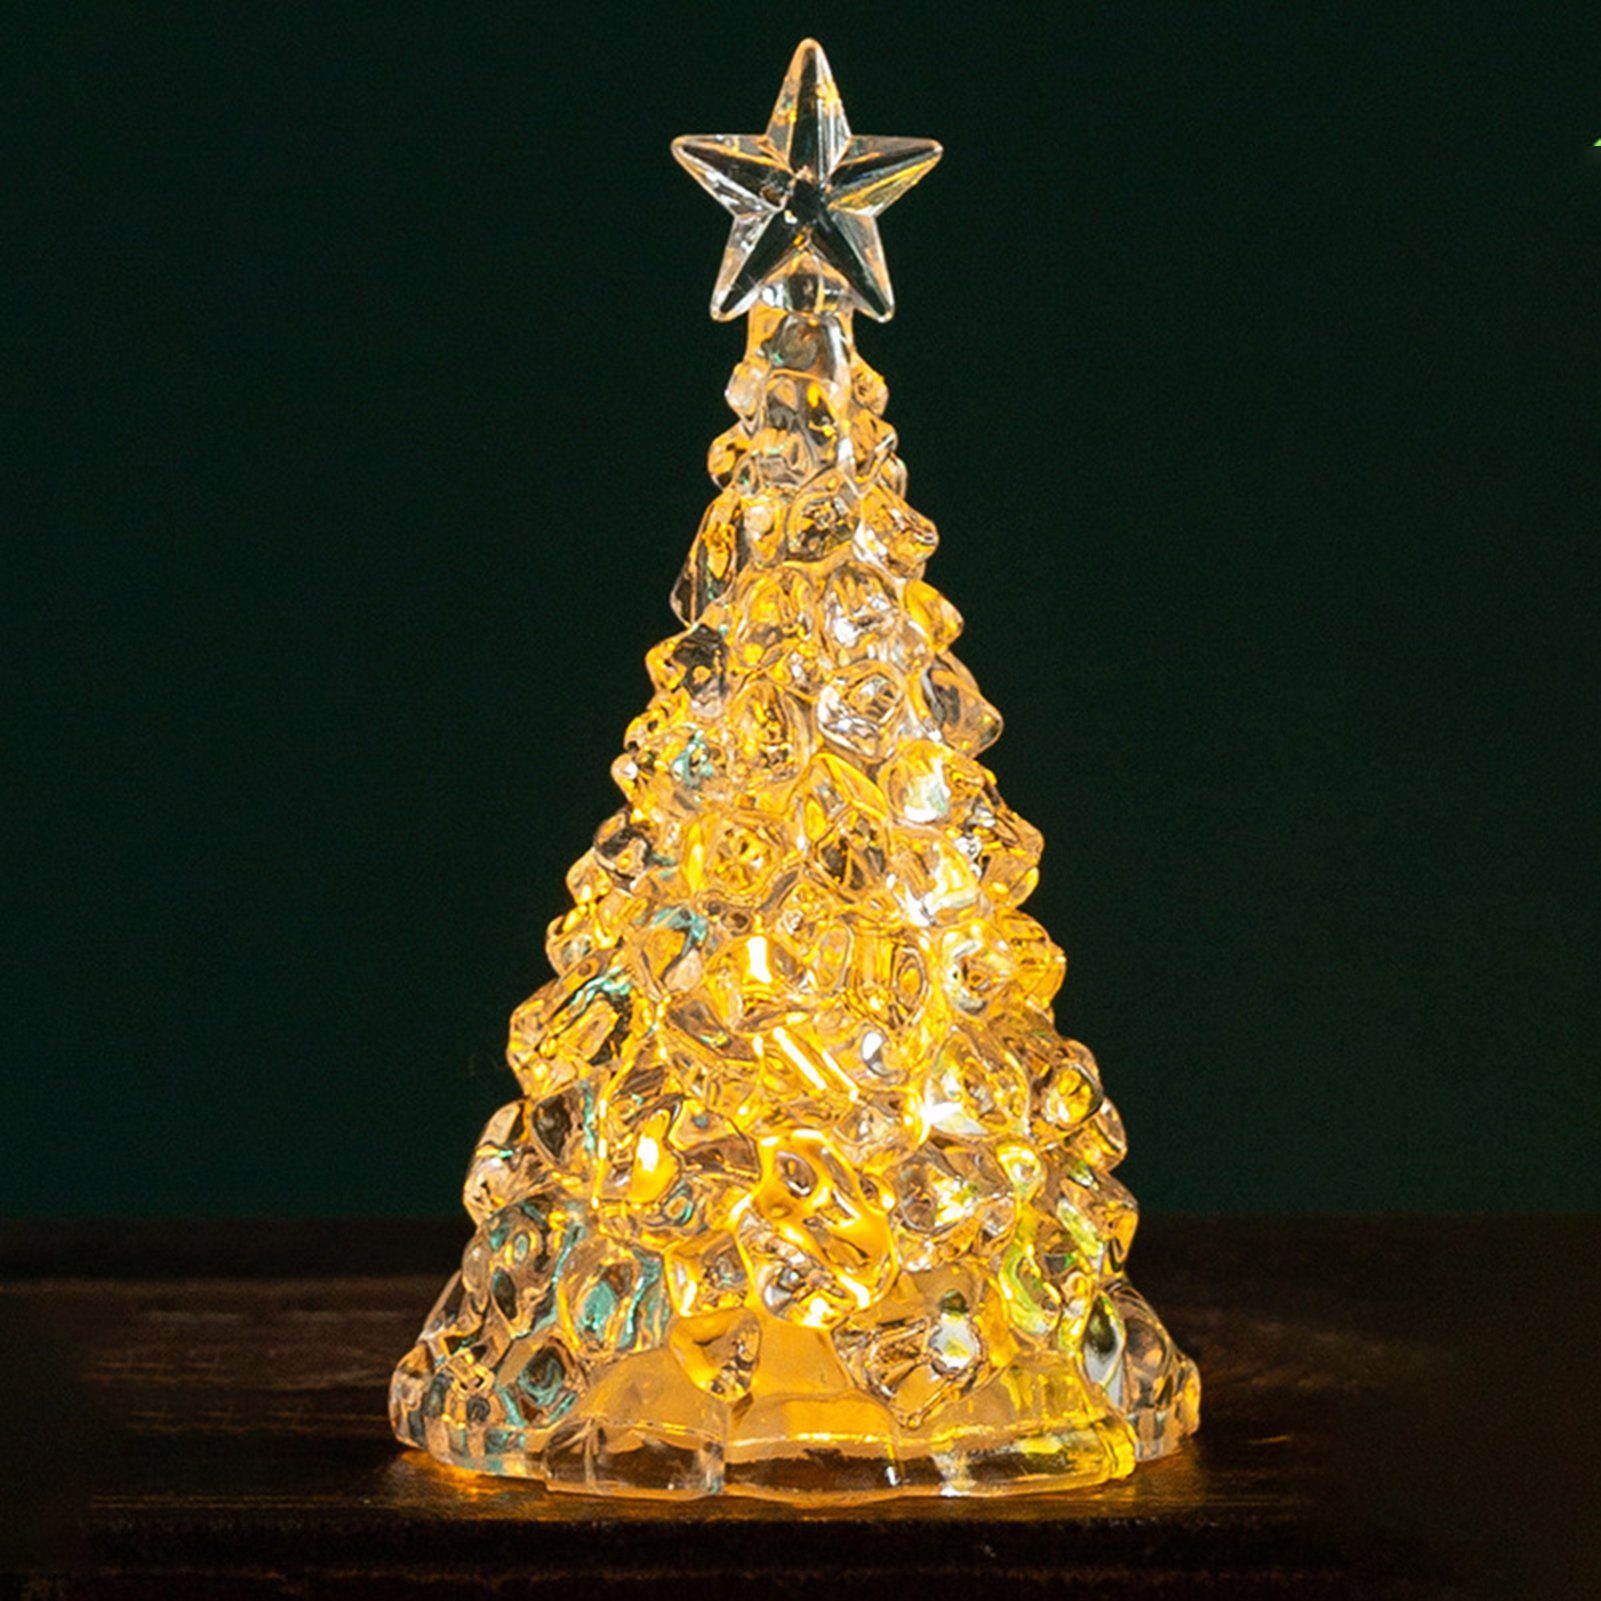 Nachtlicht Weihnachtsbaum Kristall Nachtlicht Heiligabend Ornament 4 Weihnachtsdekorationen Geschenk Nachtlicht Rutaqian Stück LED Gold Desktop LED Kerzenlicht,